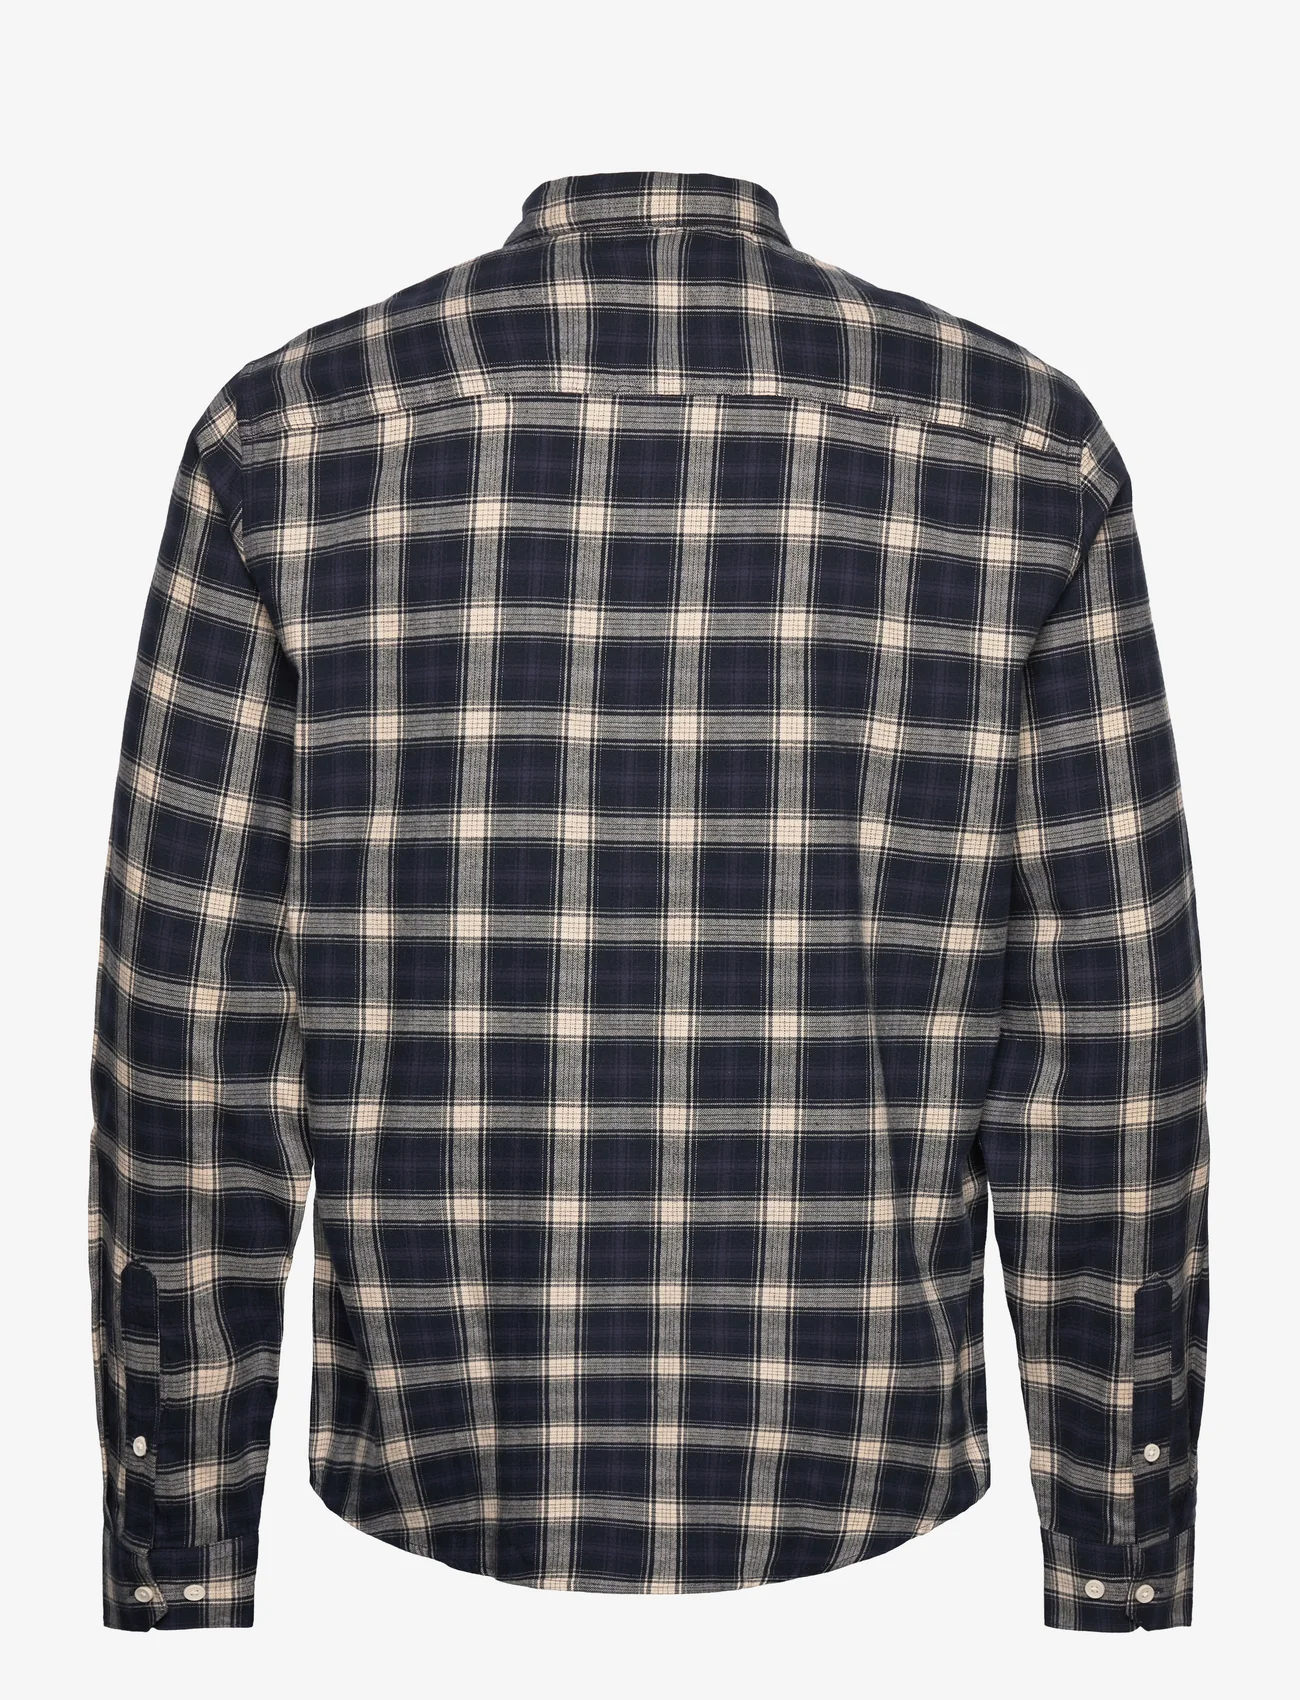 Casual Friday - CFAnton LS checked shirt - checkered shirts - dark navy - 1